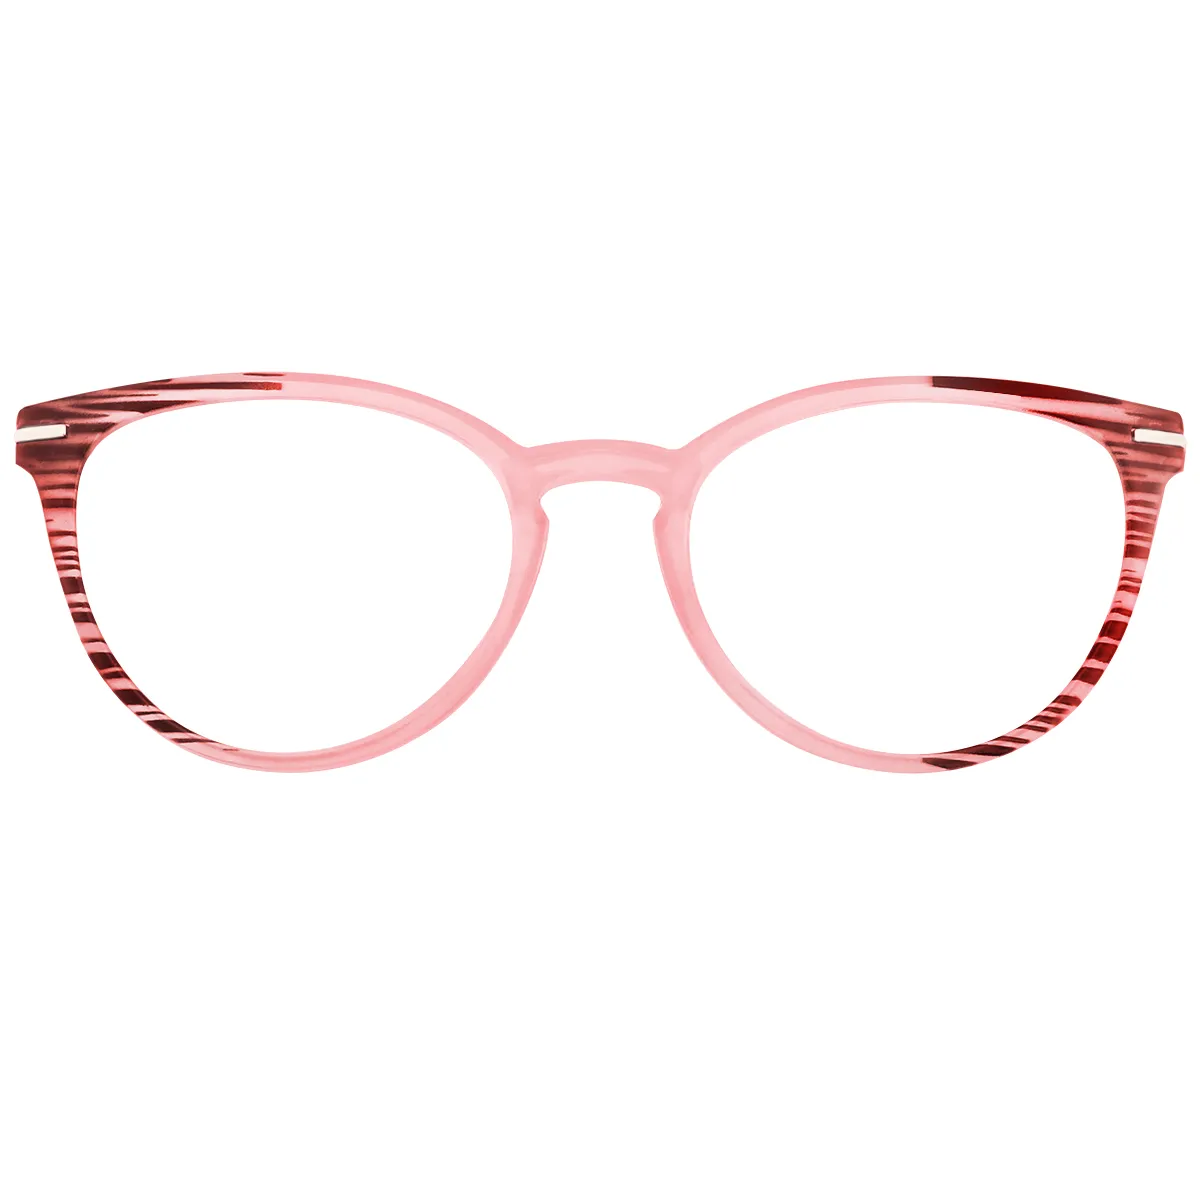 Mogul - Cat-Eye Dark-pink Reading glasses for Women